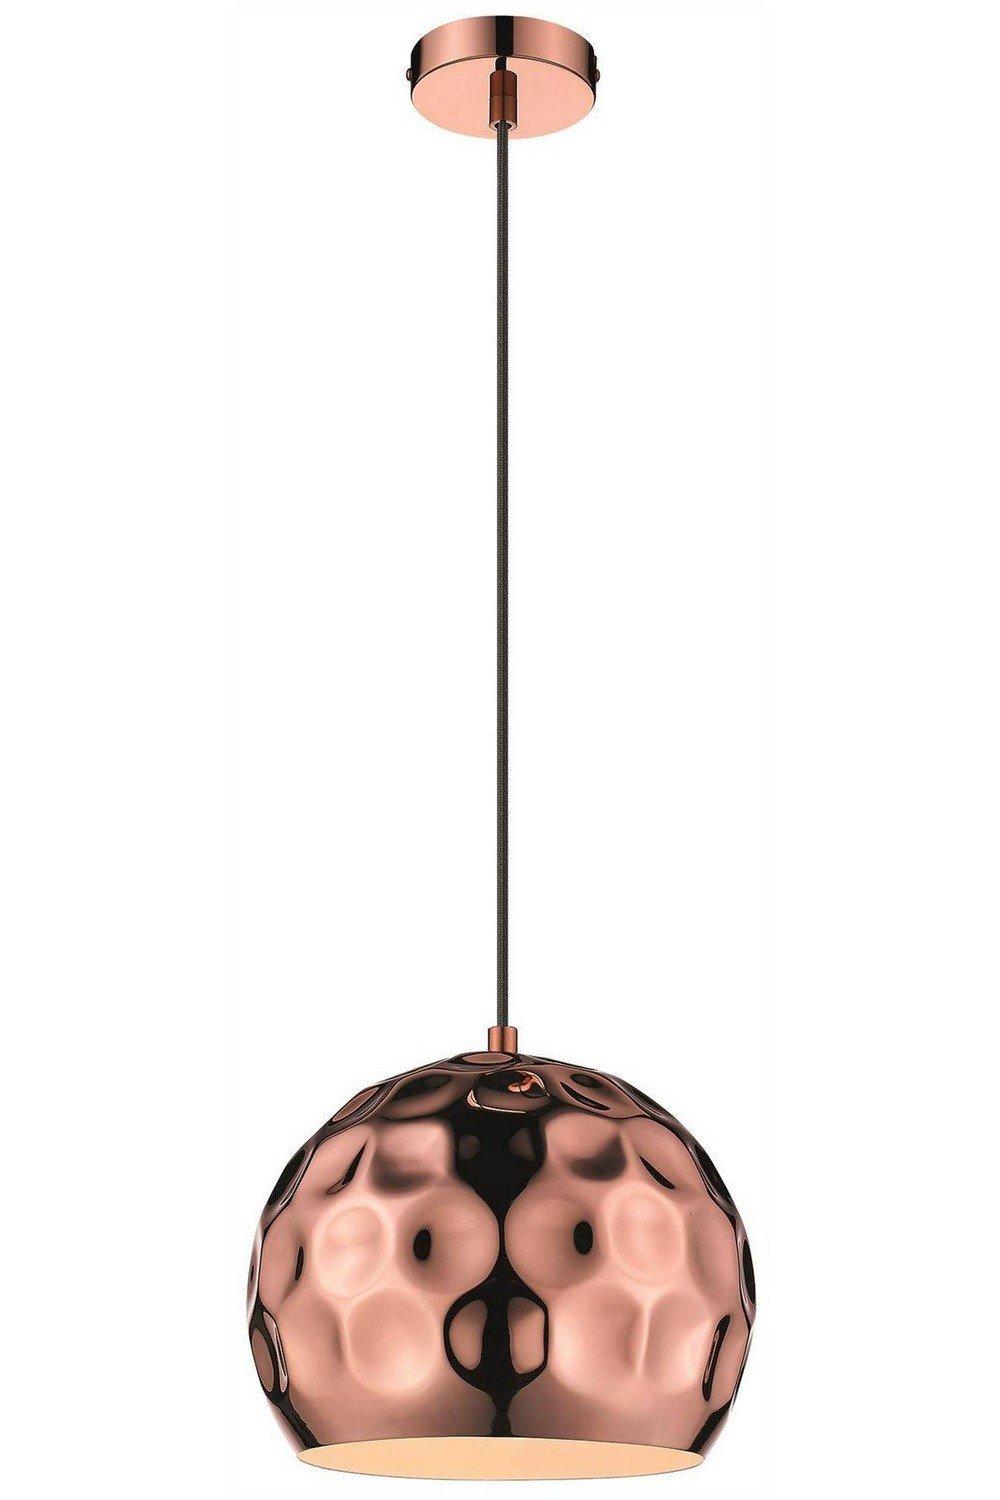 Spring Small Dome Ceiling Pendant Black Copper E27